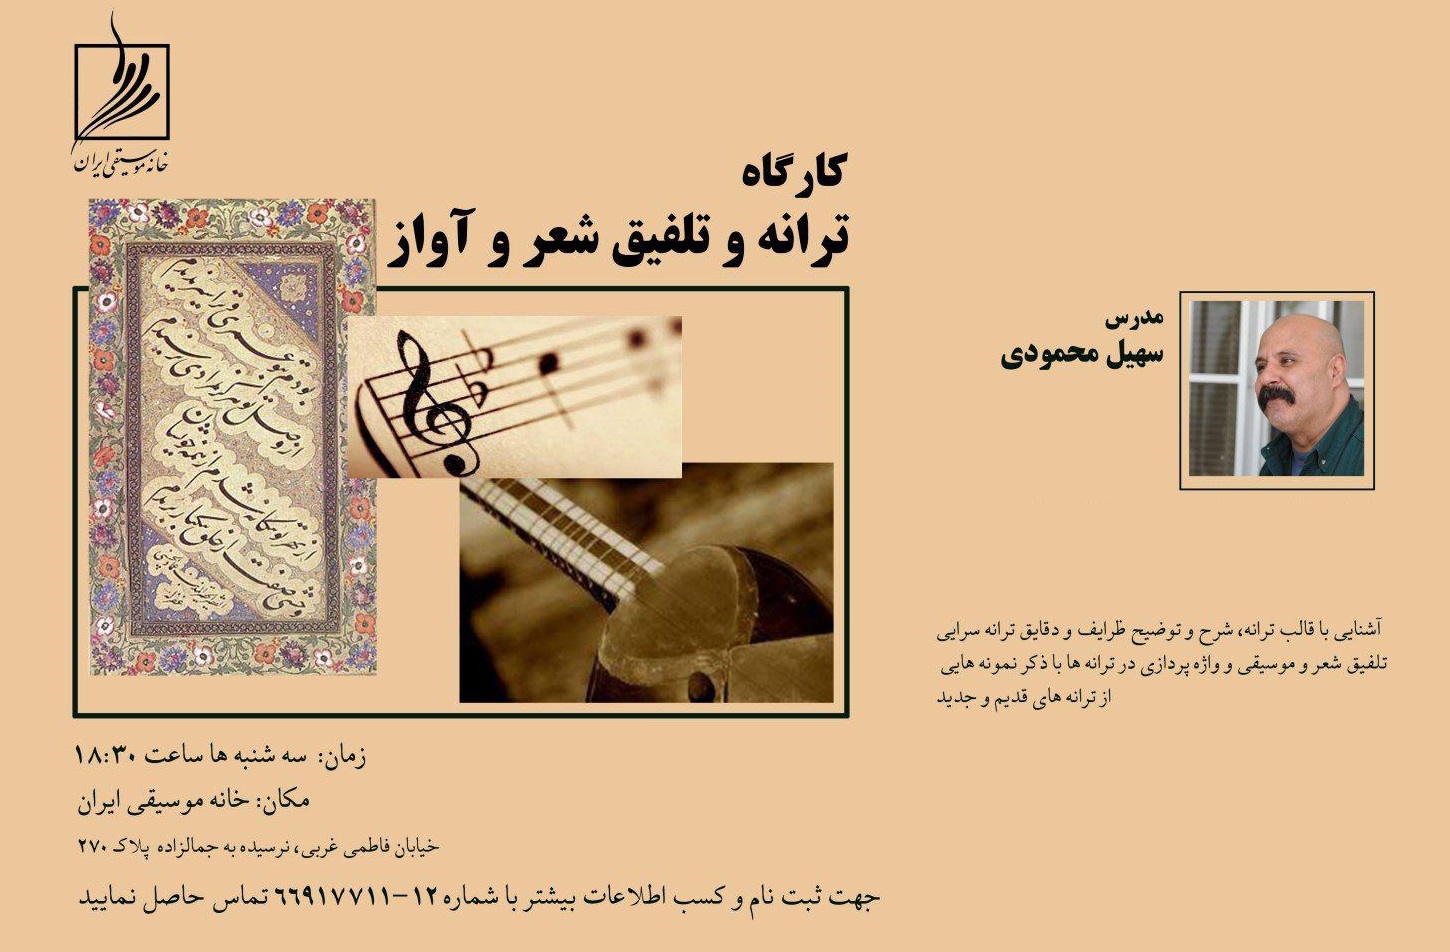 تلفیق شعر و موسیقی سهیل محمودی